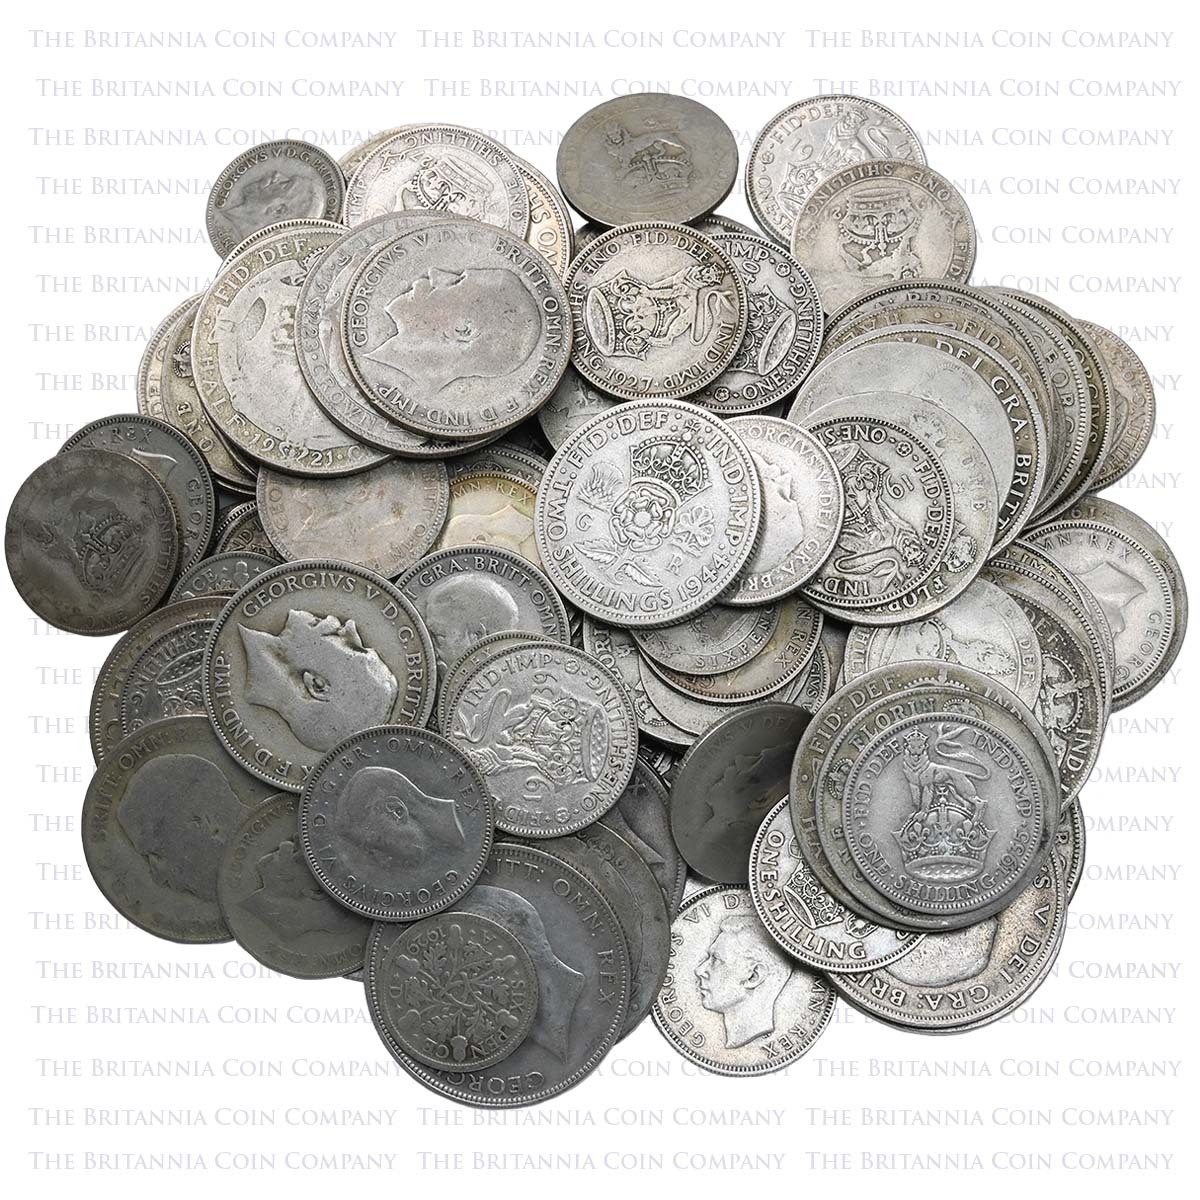 1 Kilo Mixed Pre-1947 British Silver Coins Bullion Kiloware